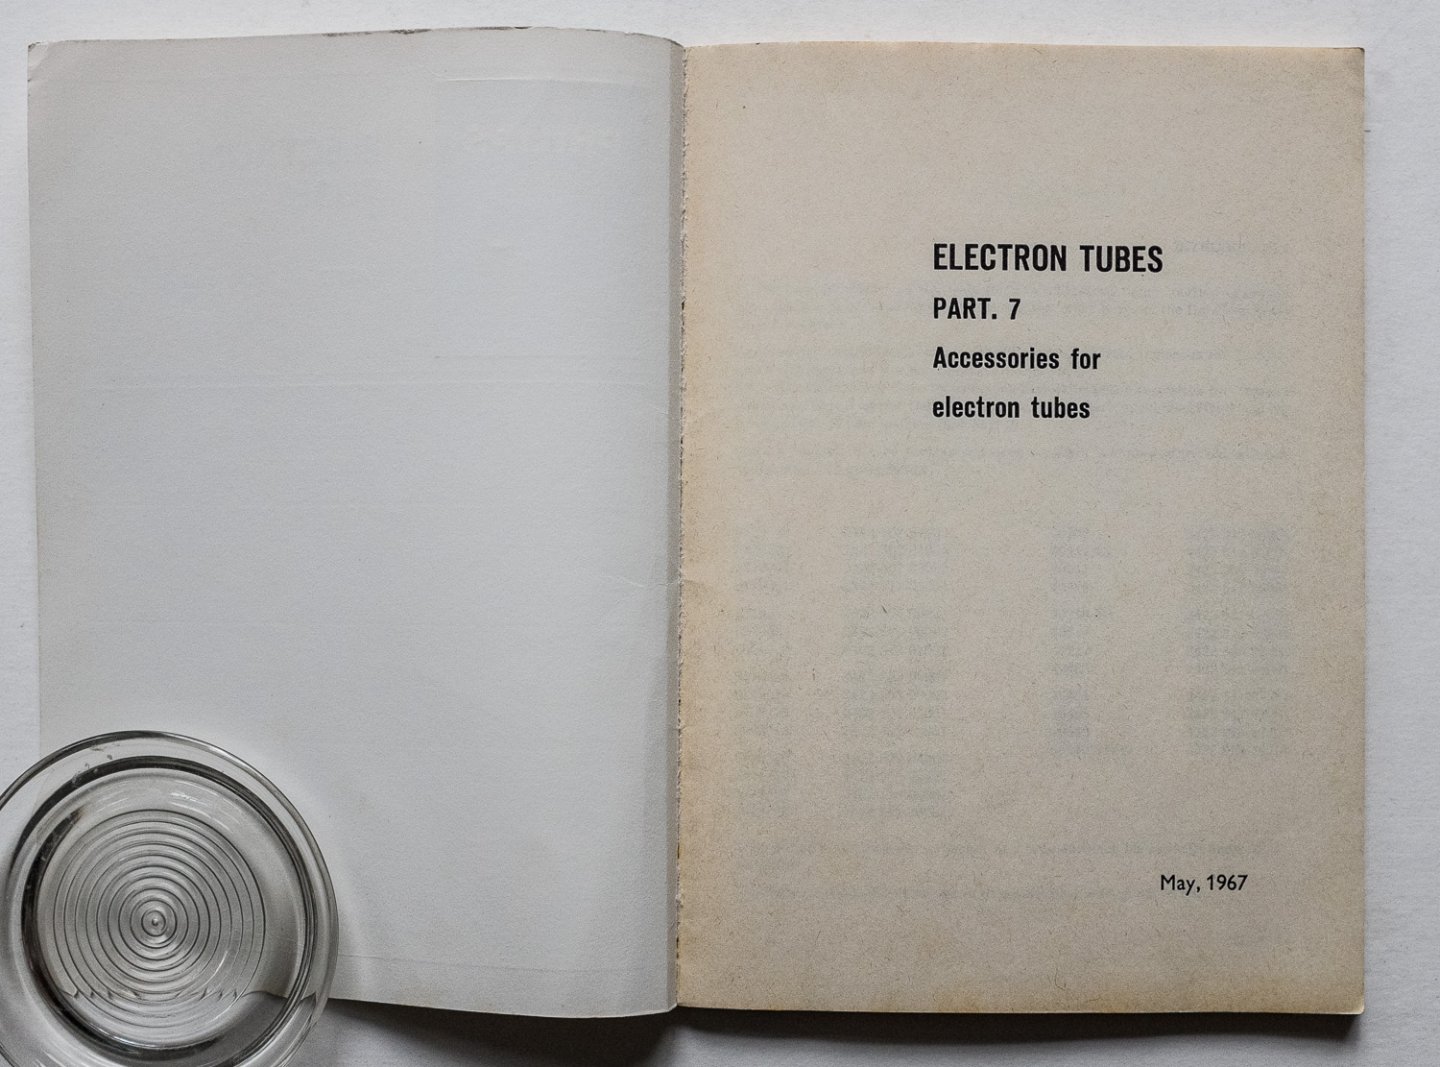  - Electron tubes - Accssories for electron tubes